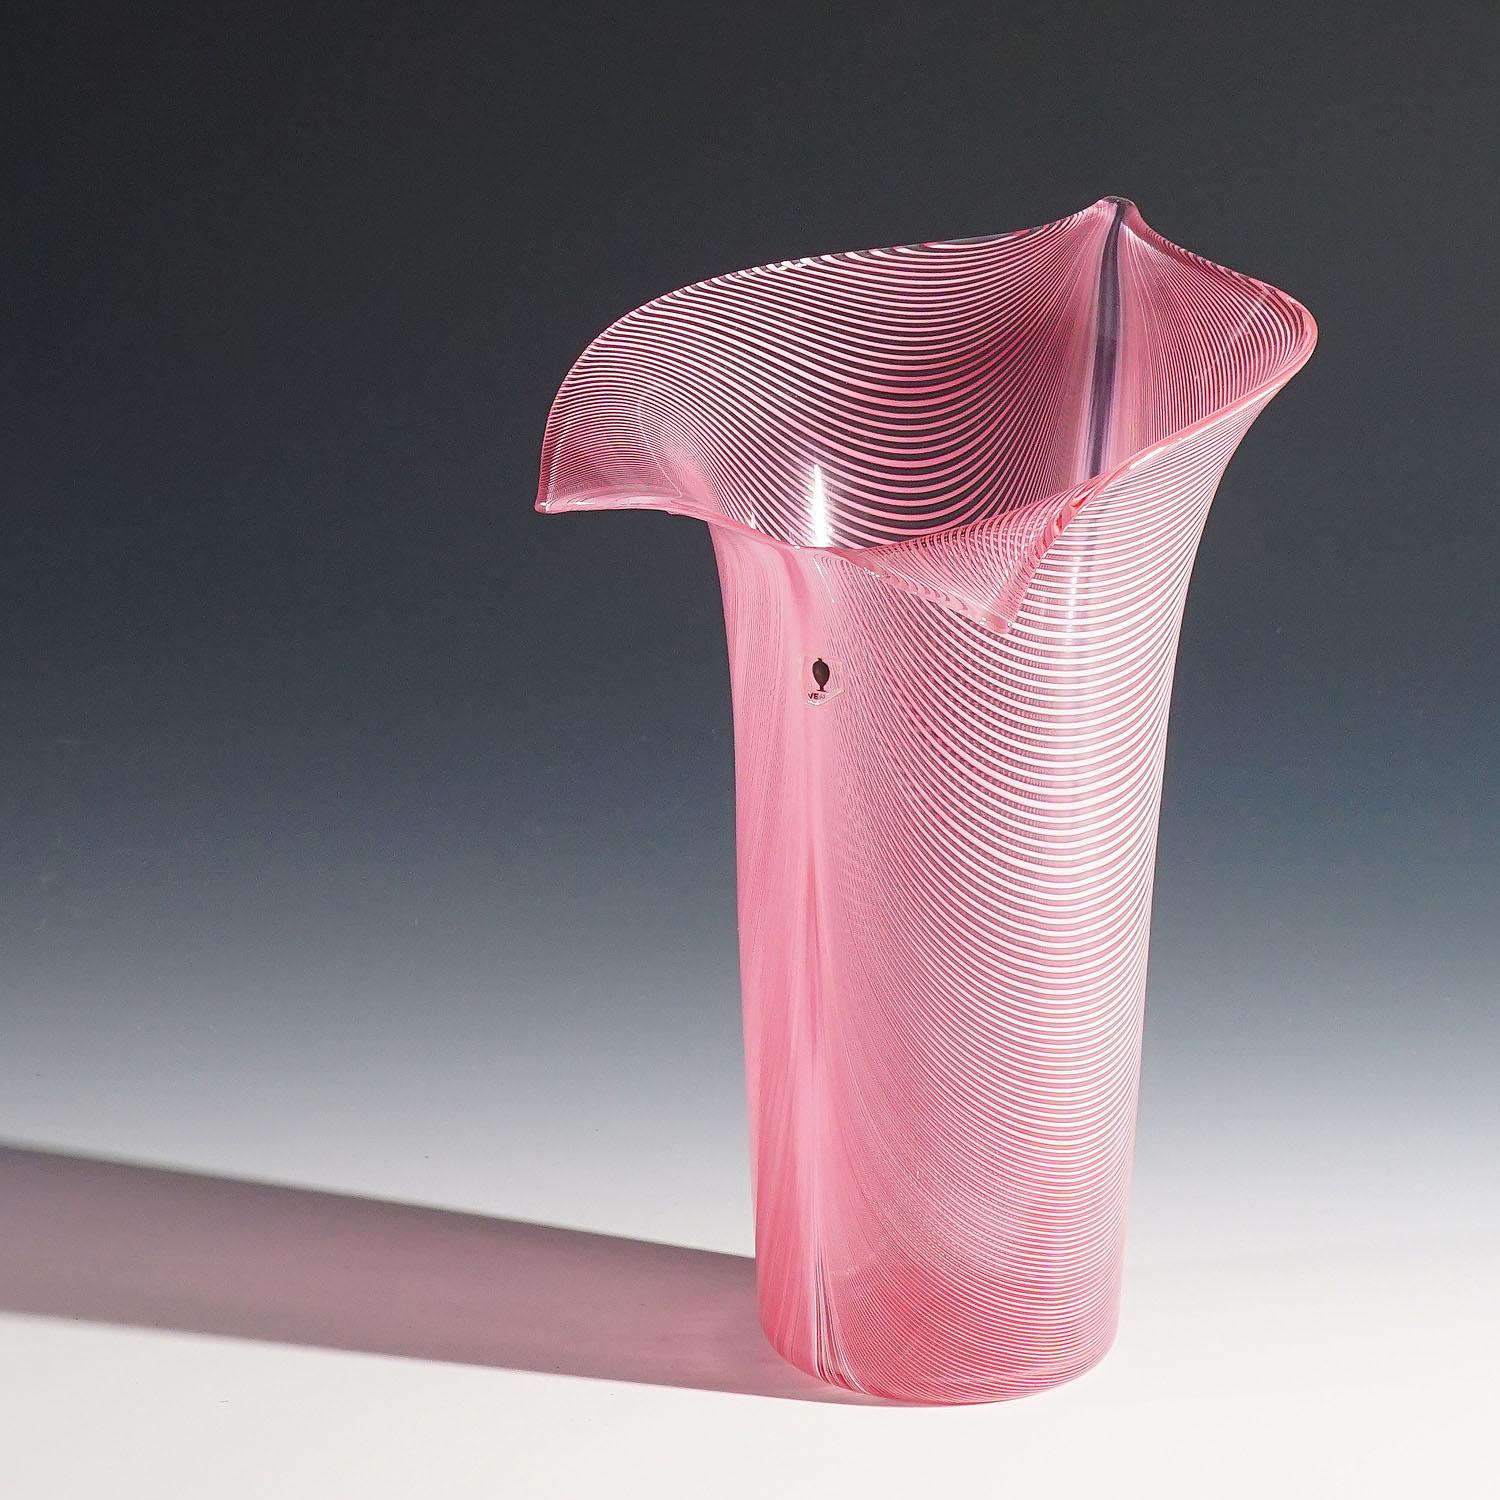 Tyra Lundgren Vase 'Calla' für Venini

Calla-Vase aus Filigrana-Glas, entworfen von Tyra Lundgren 1948, hergestellt von Venini, Venedig 1981. Eingeschnittene Signatur 